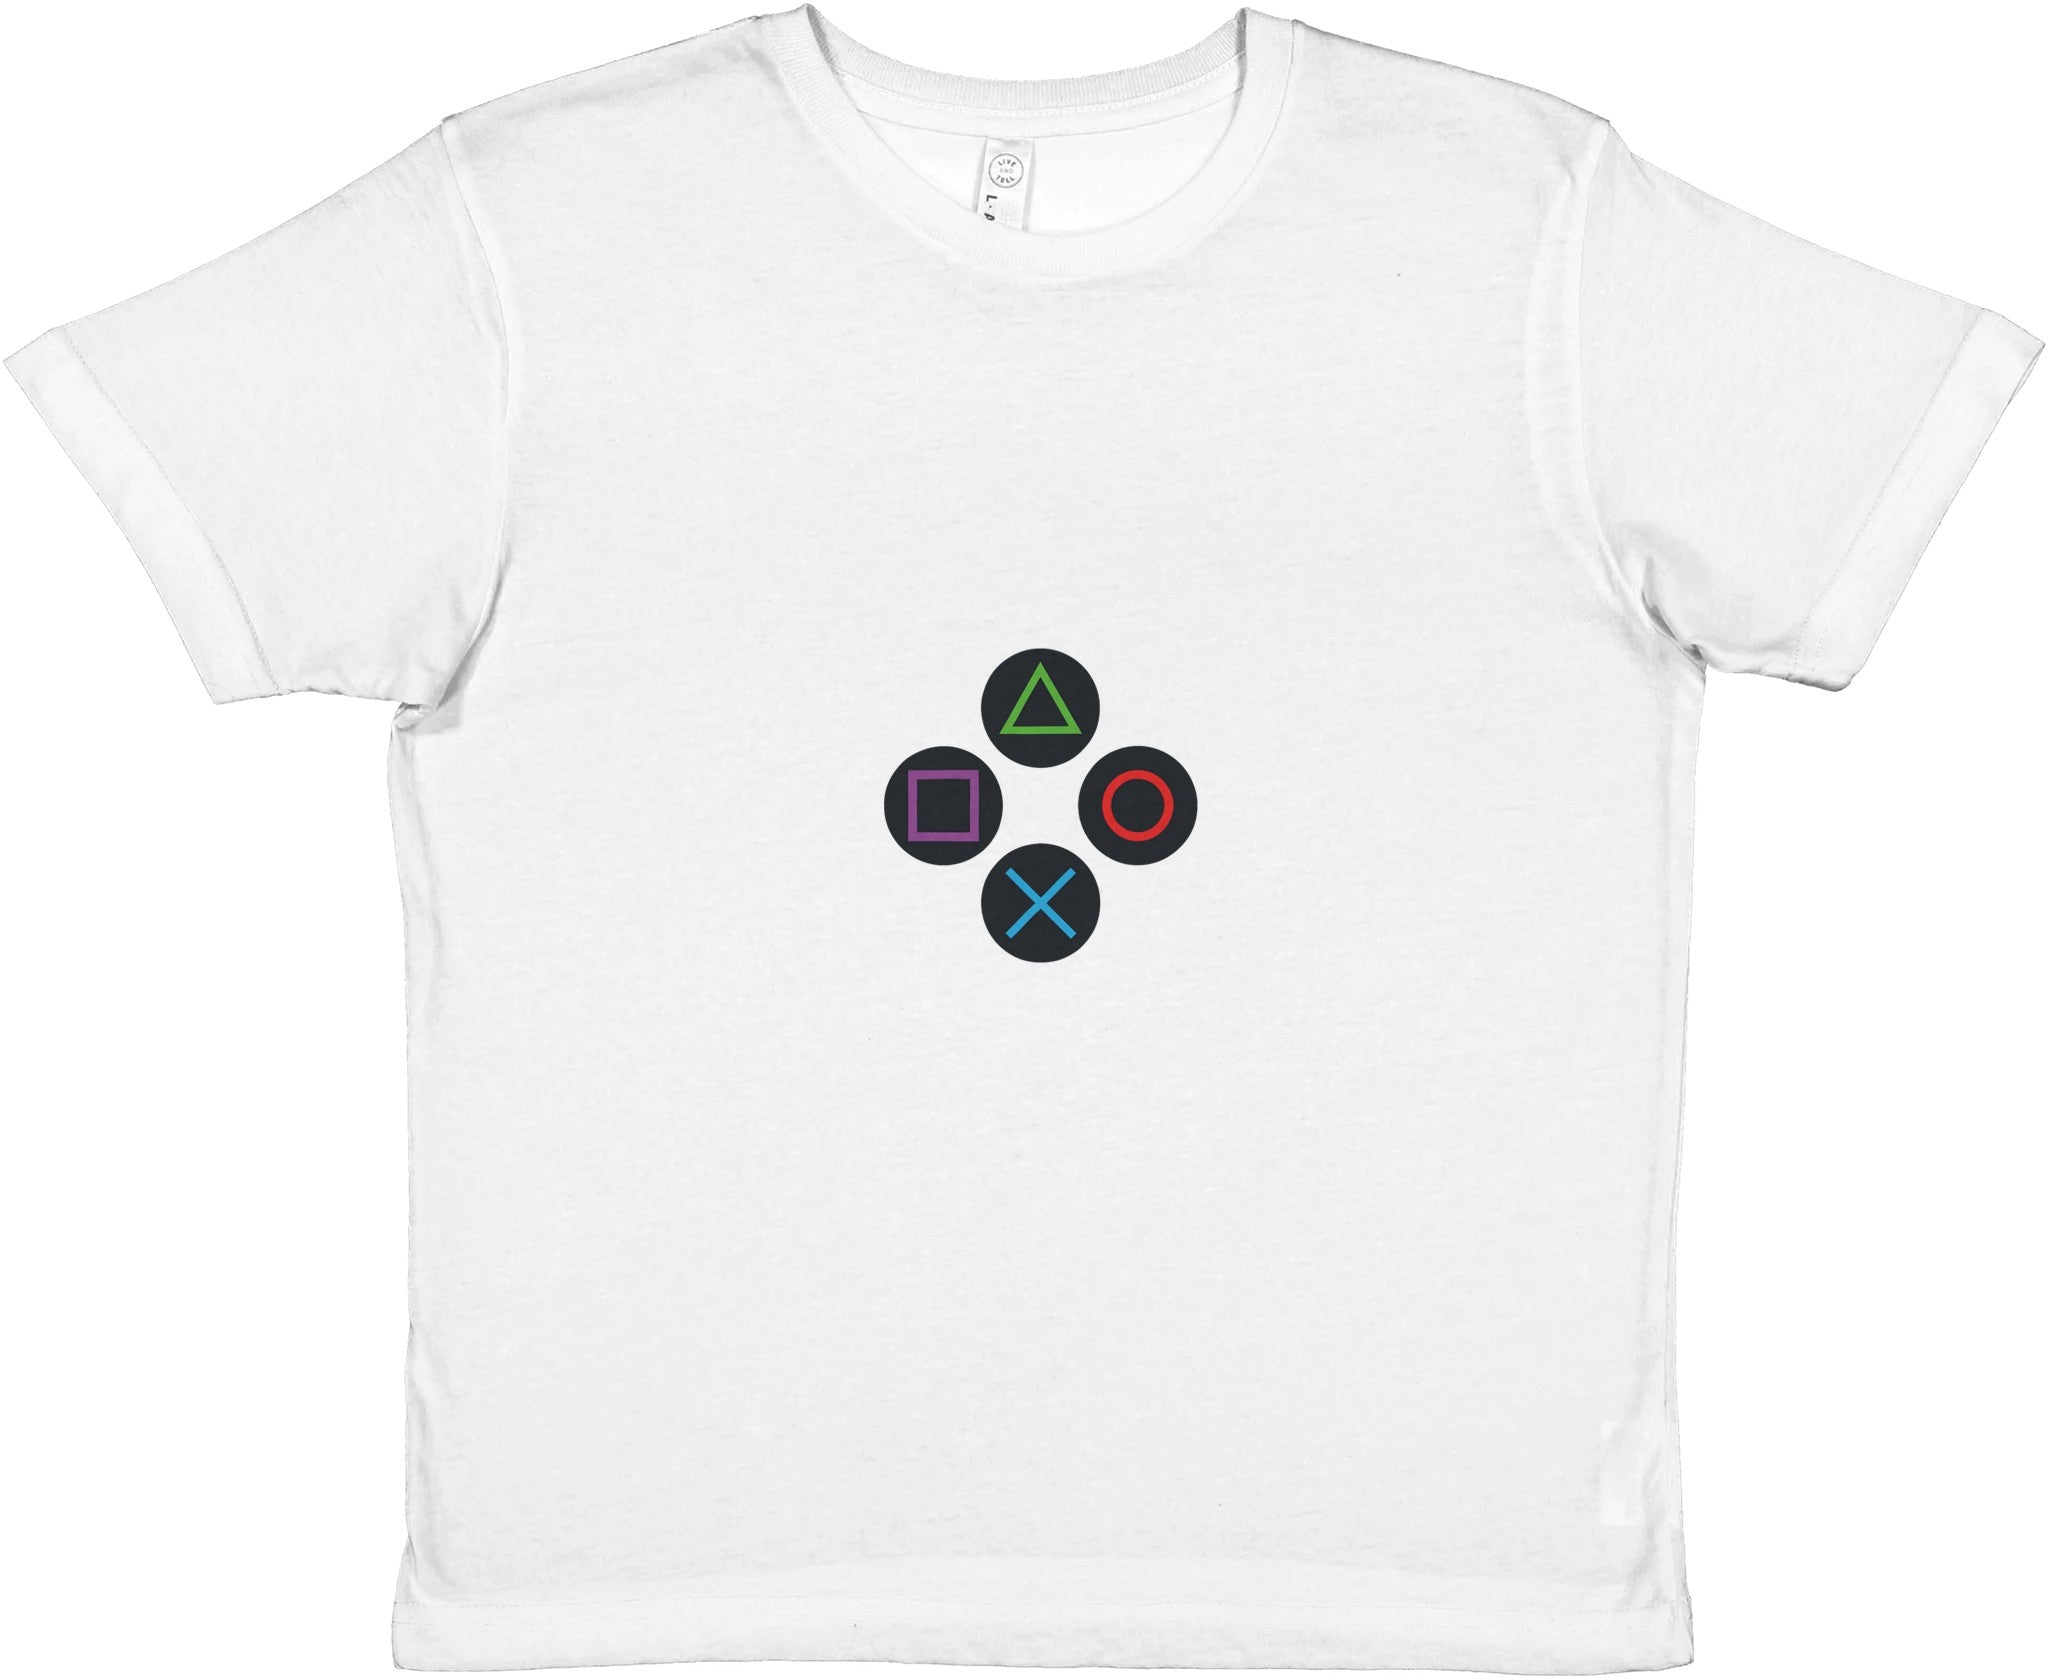 Clean Buttons Kids Crewneck T-shirt - Optimalprint